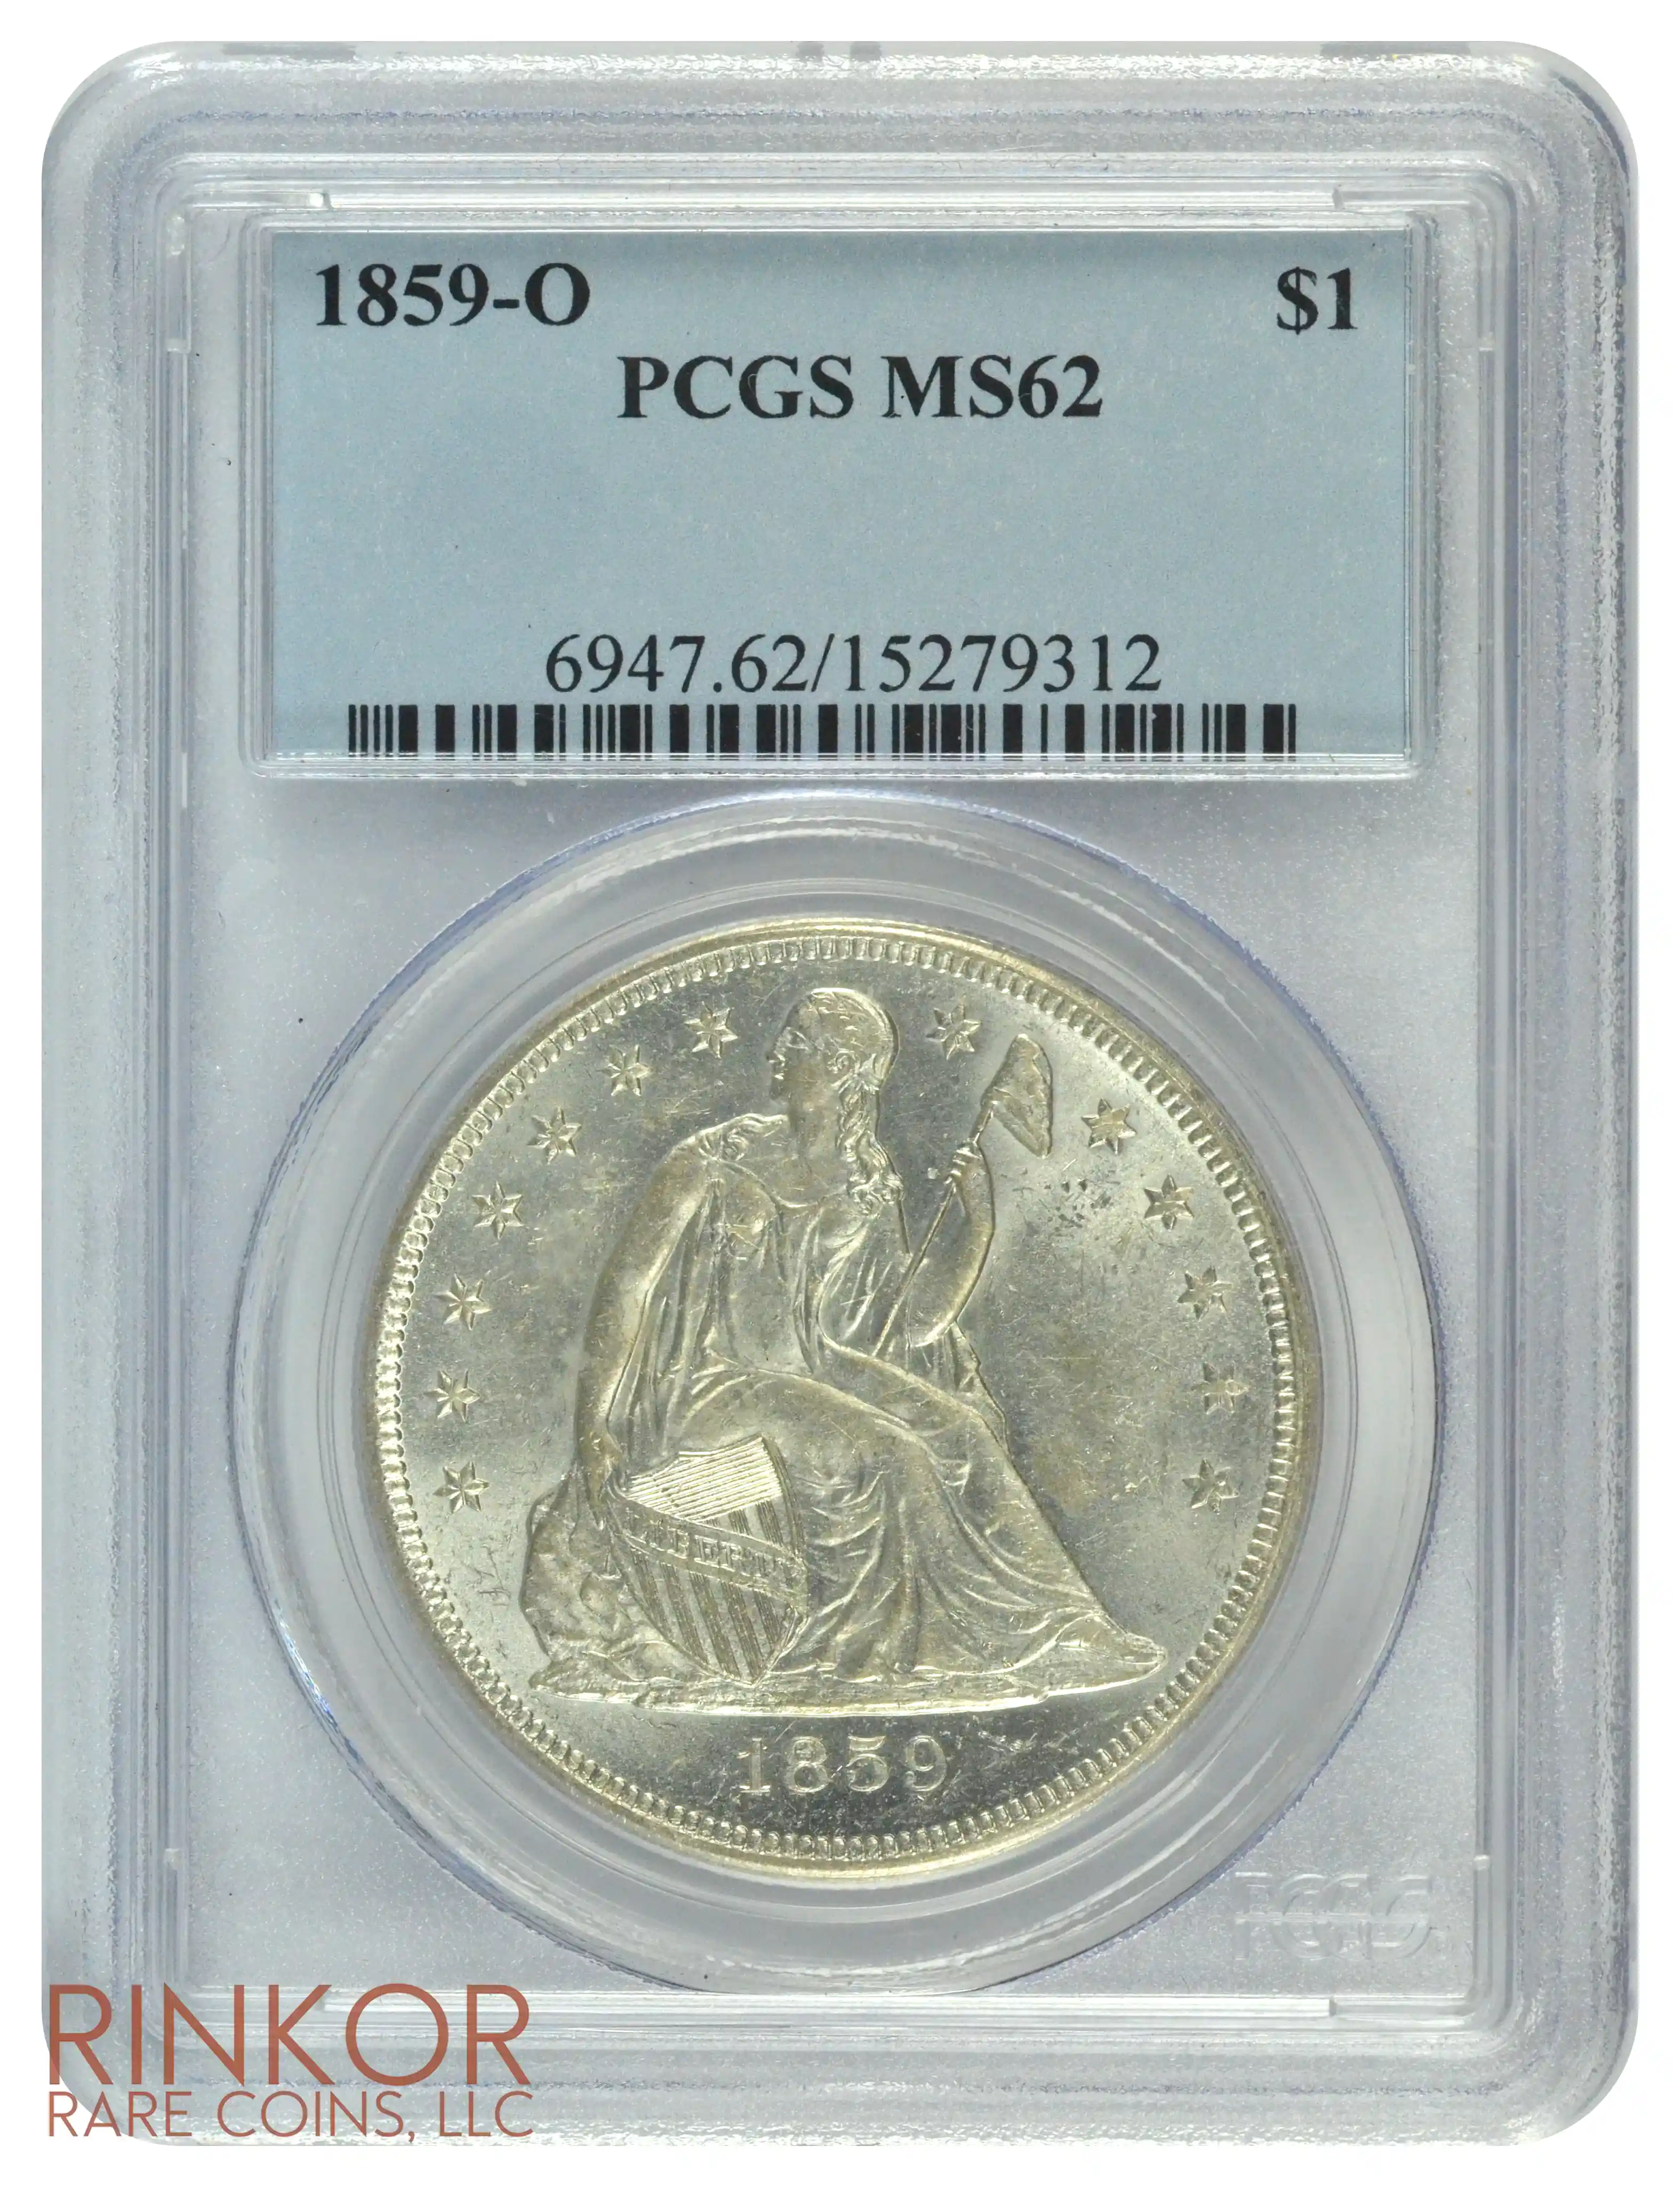 1859-O $1 PCGS MS 62